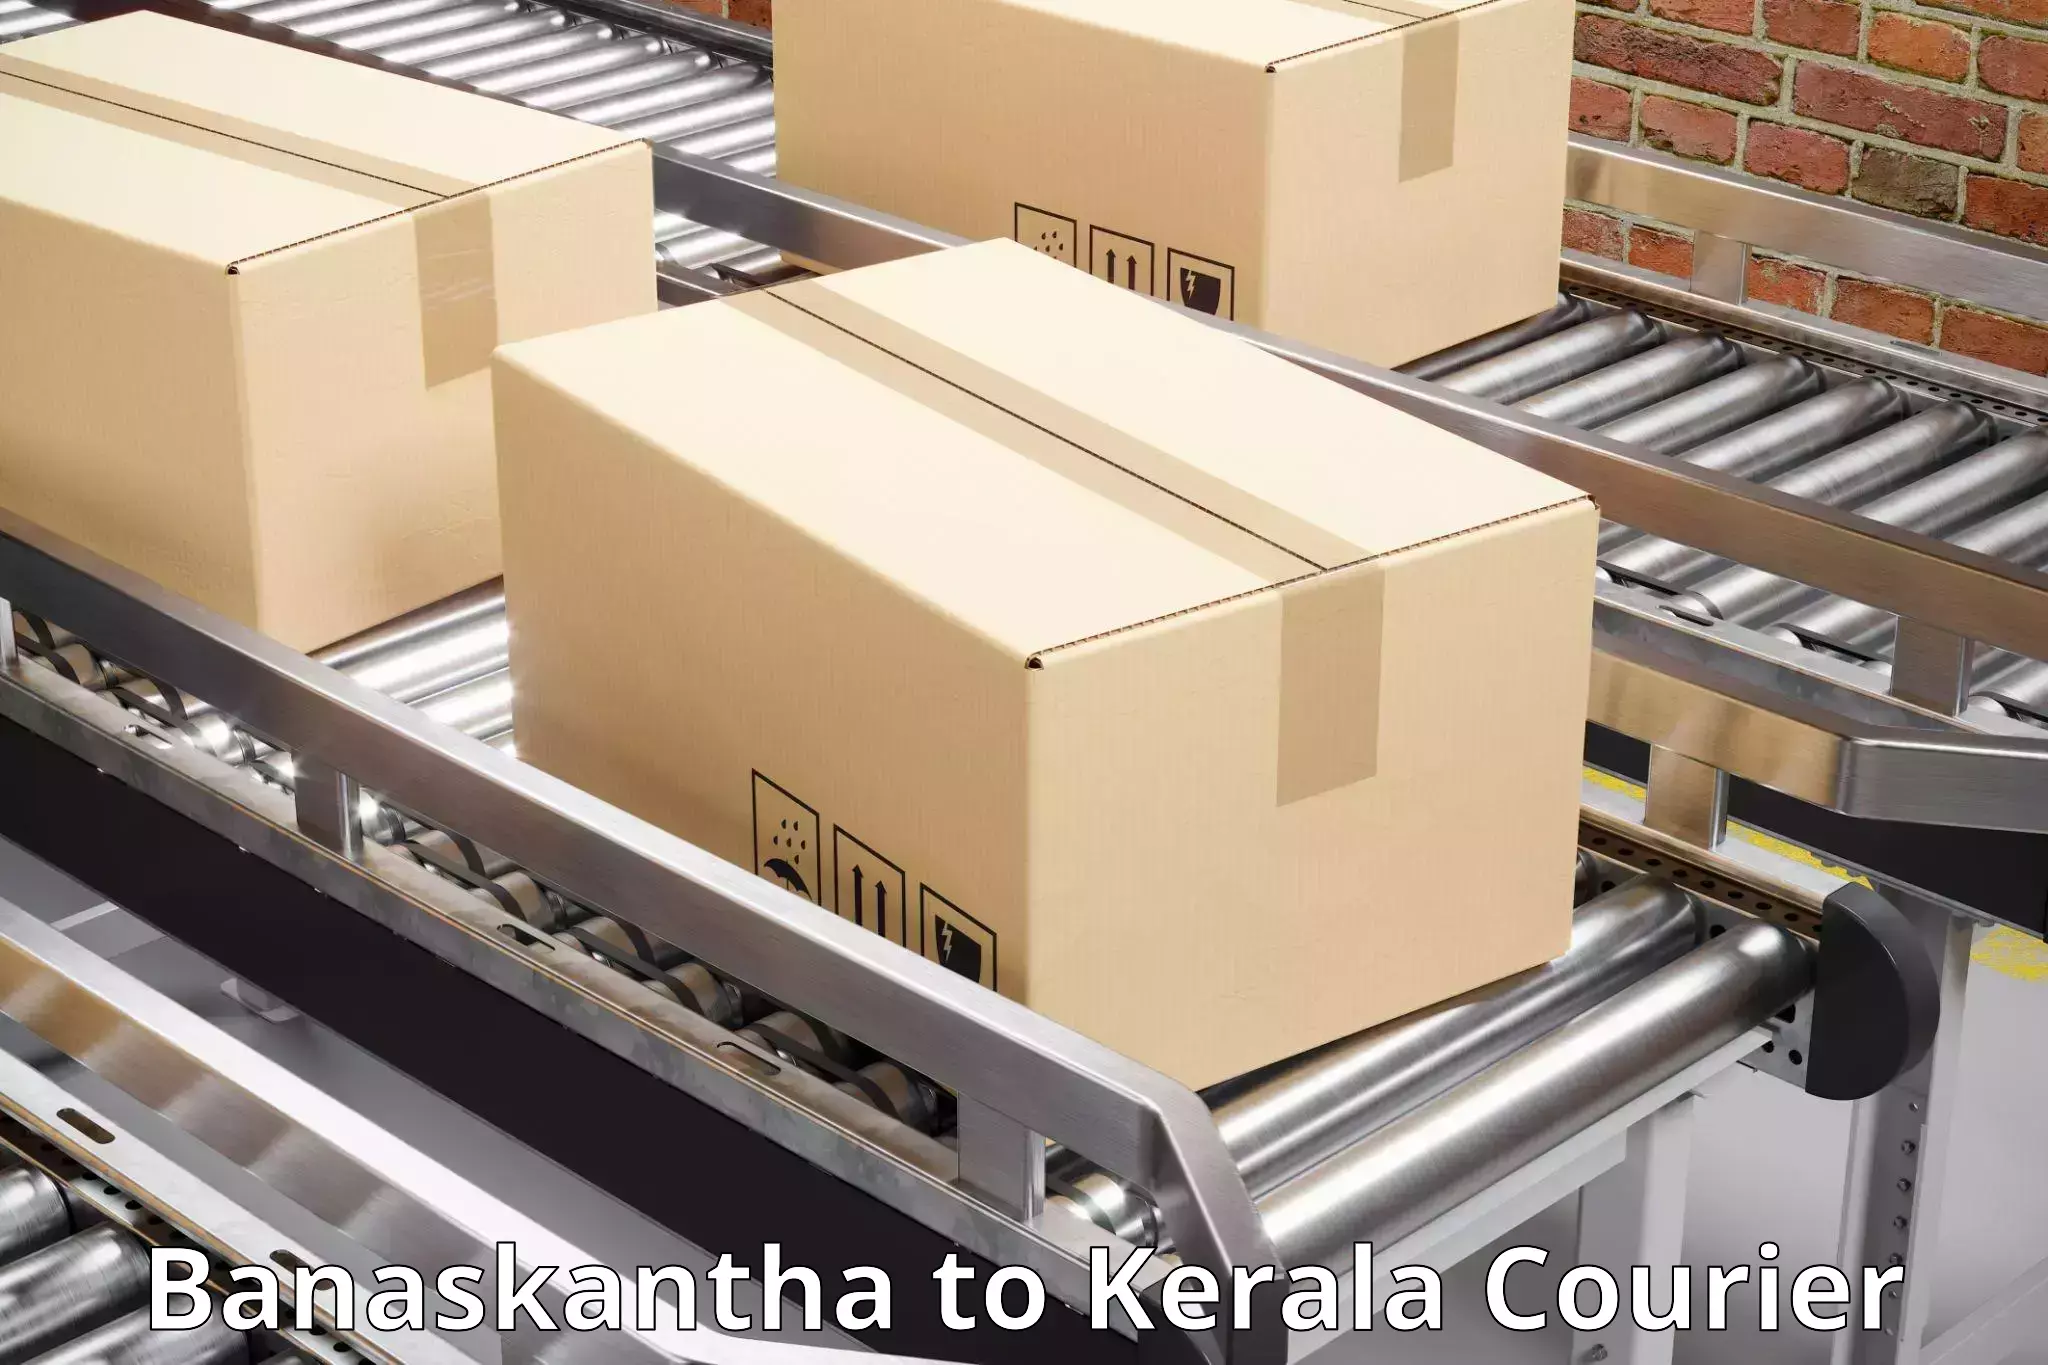 Door-to-door shipment Banaskantha to Adur Kla